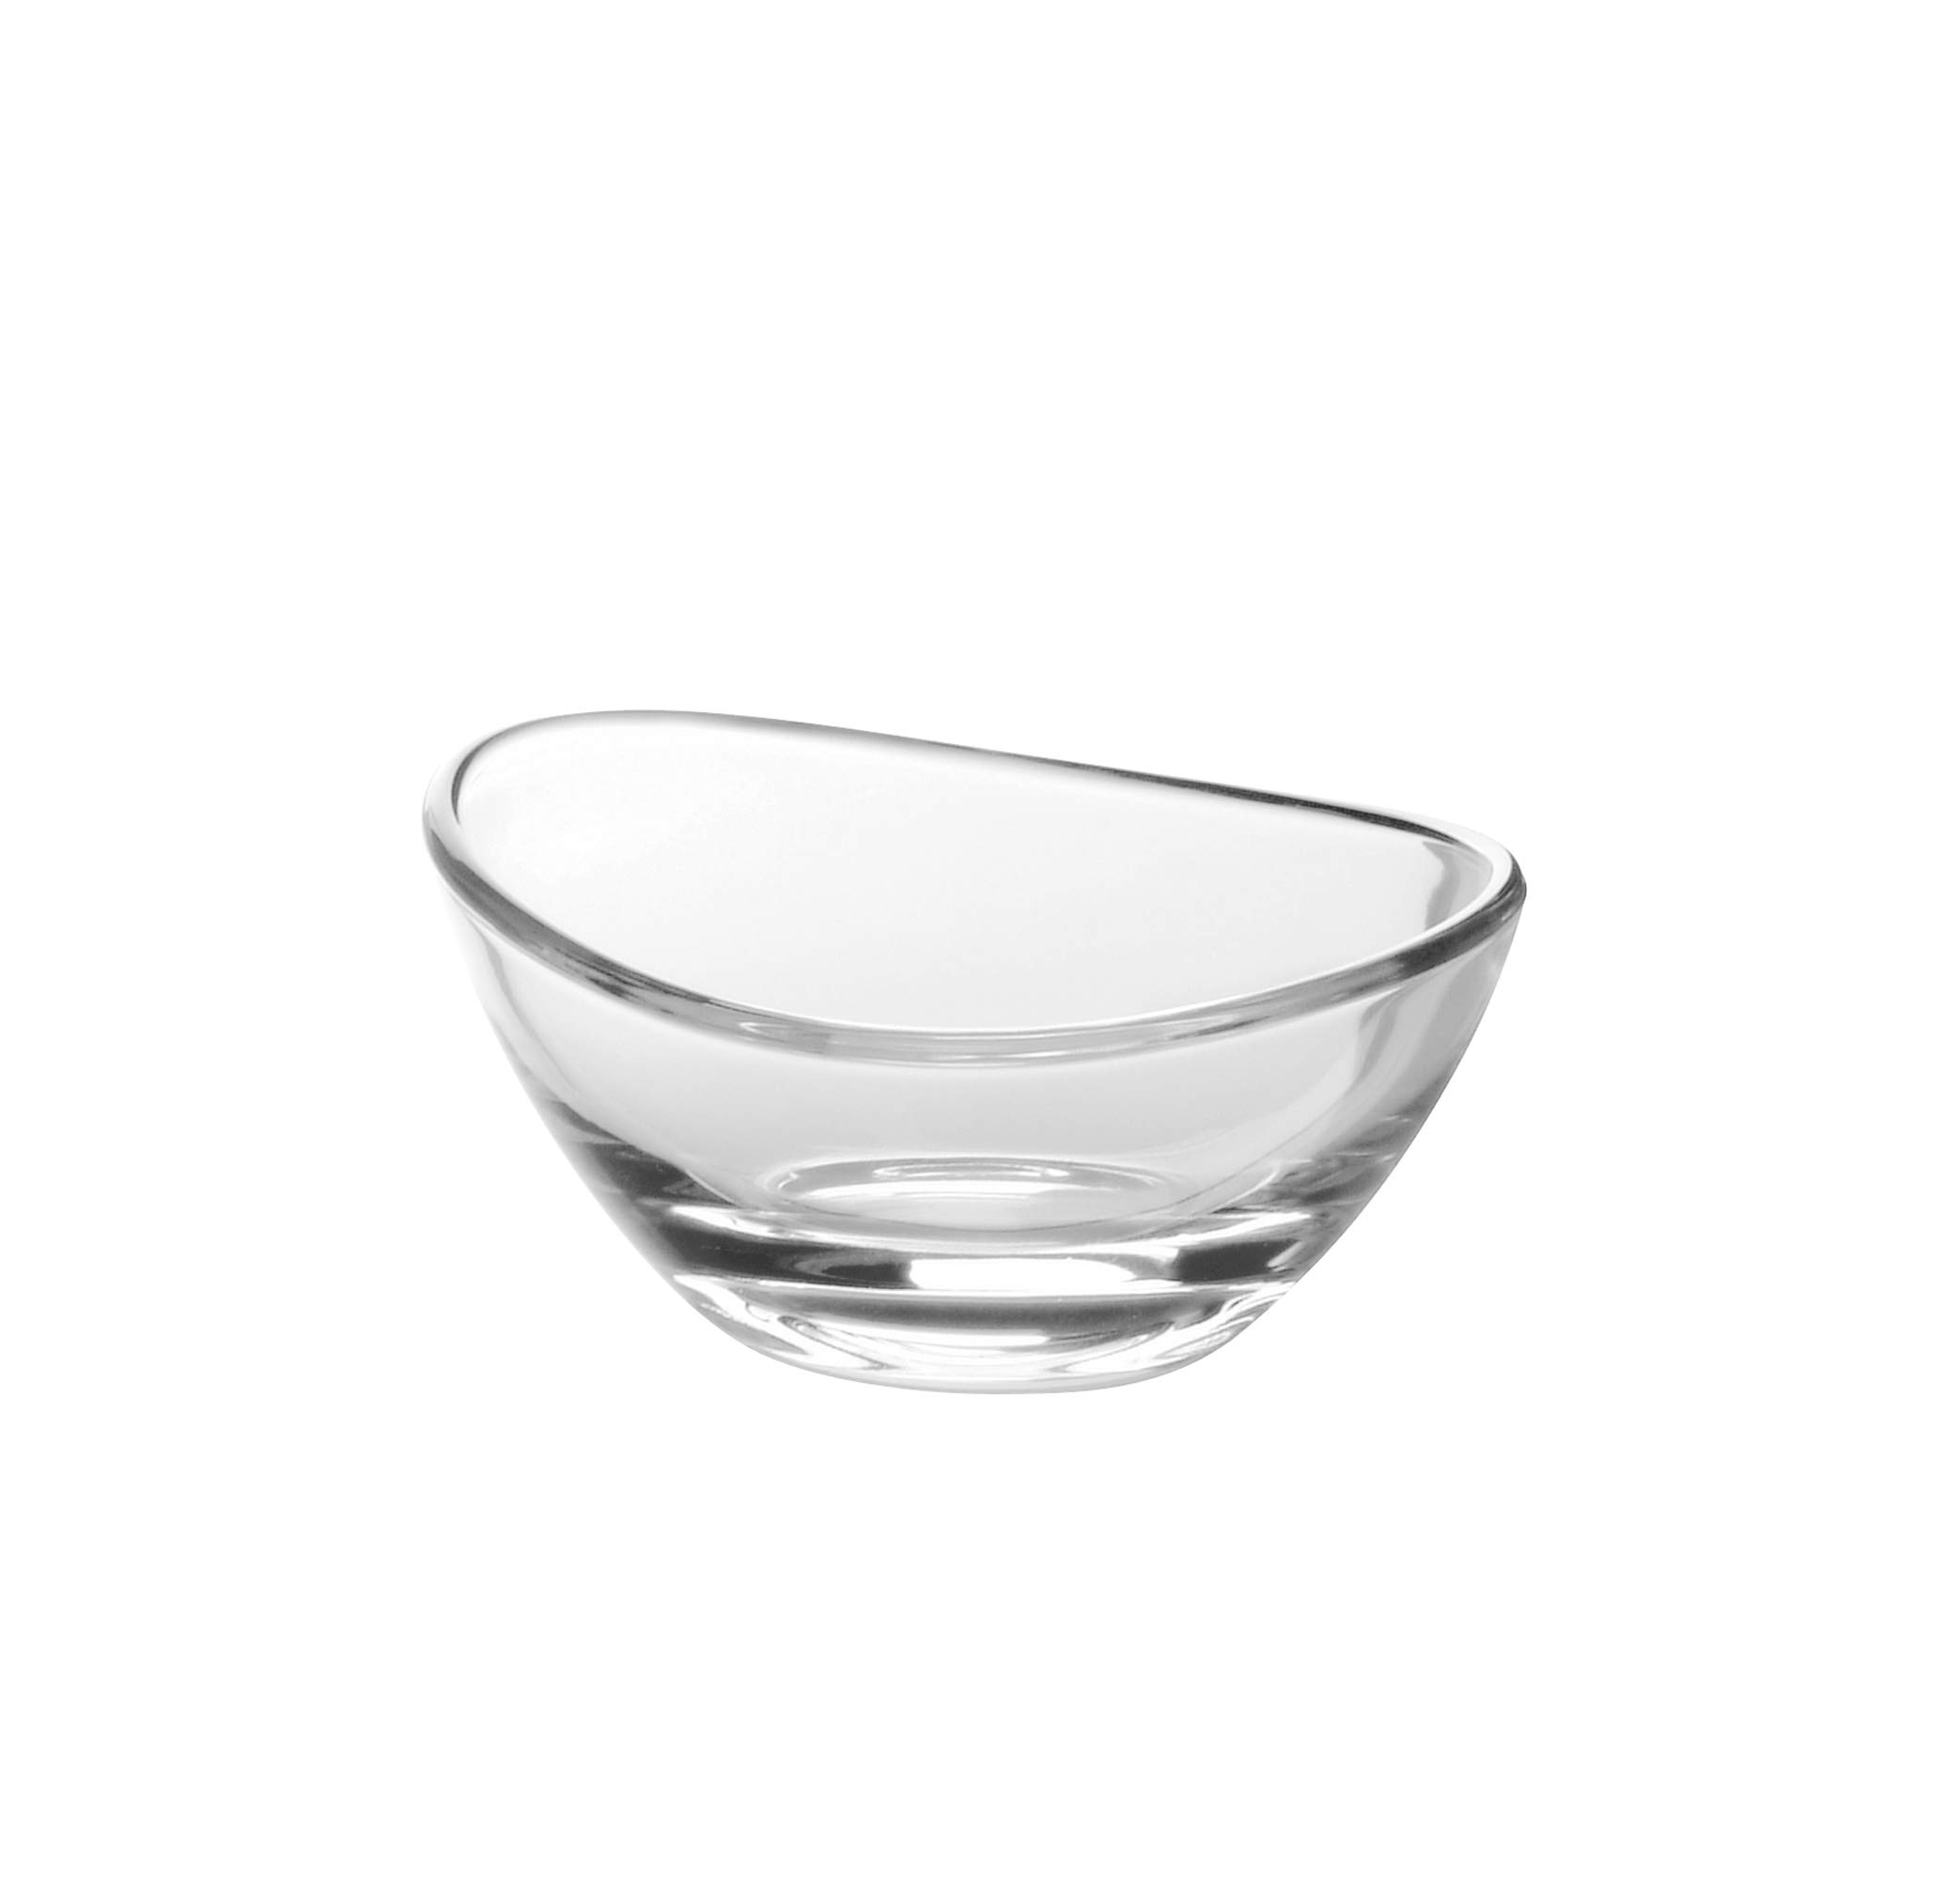 Barski - European High Glass - Small Fruit/Nut/Dessert Bowl - 3" Diameter - Set of 6 - Made in Europe